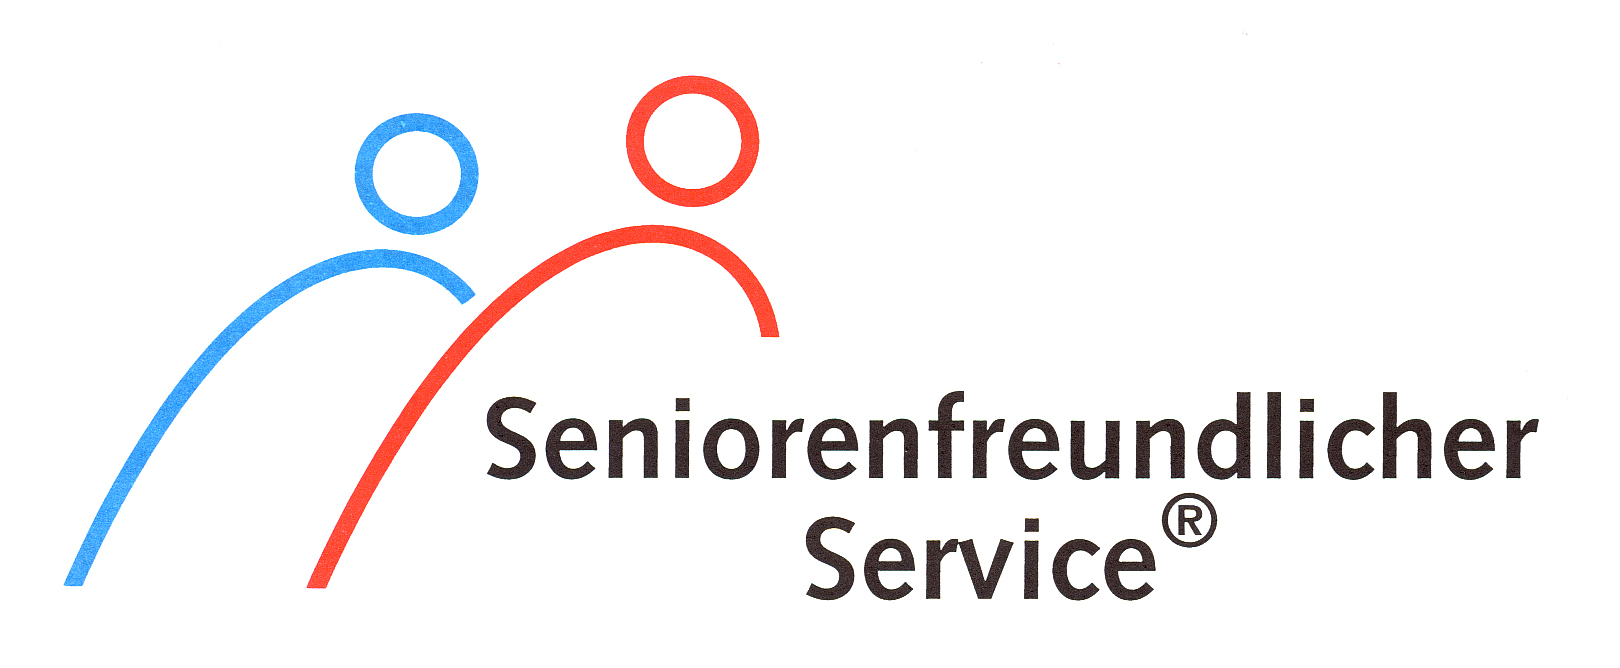 Seniorenfreundlicher Service Logo